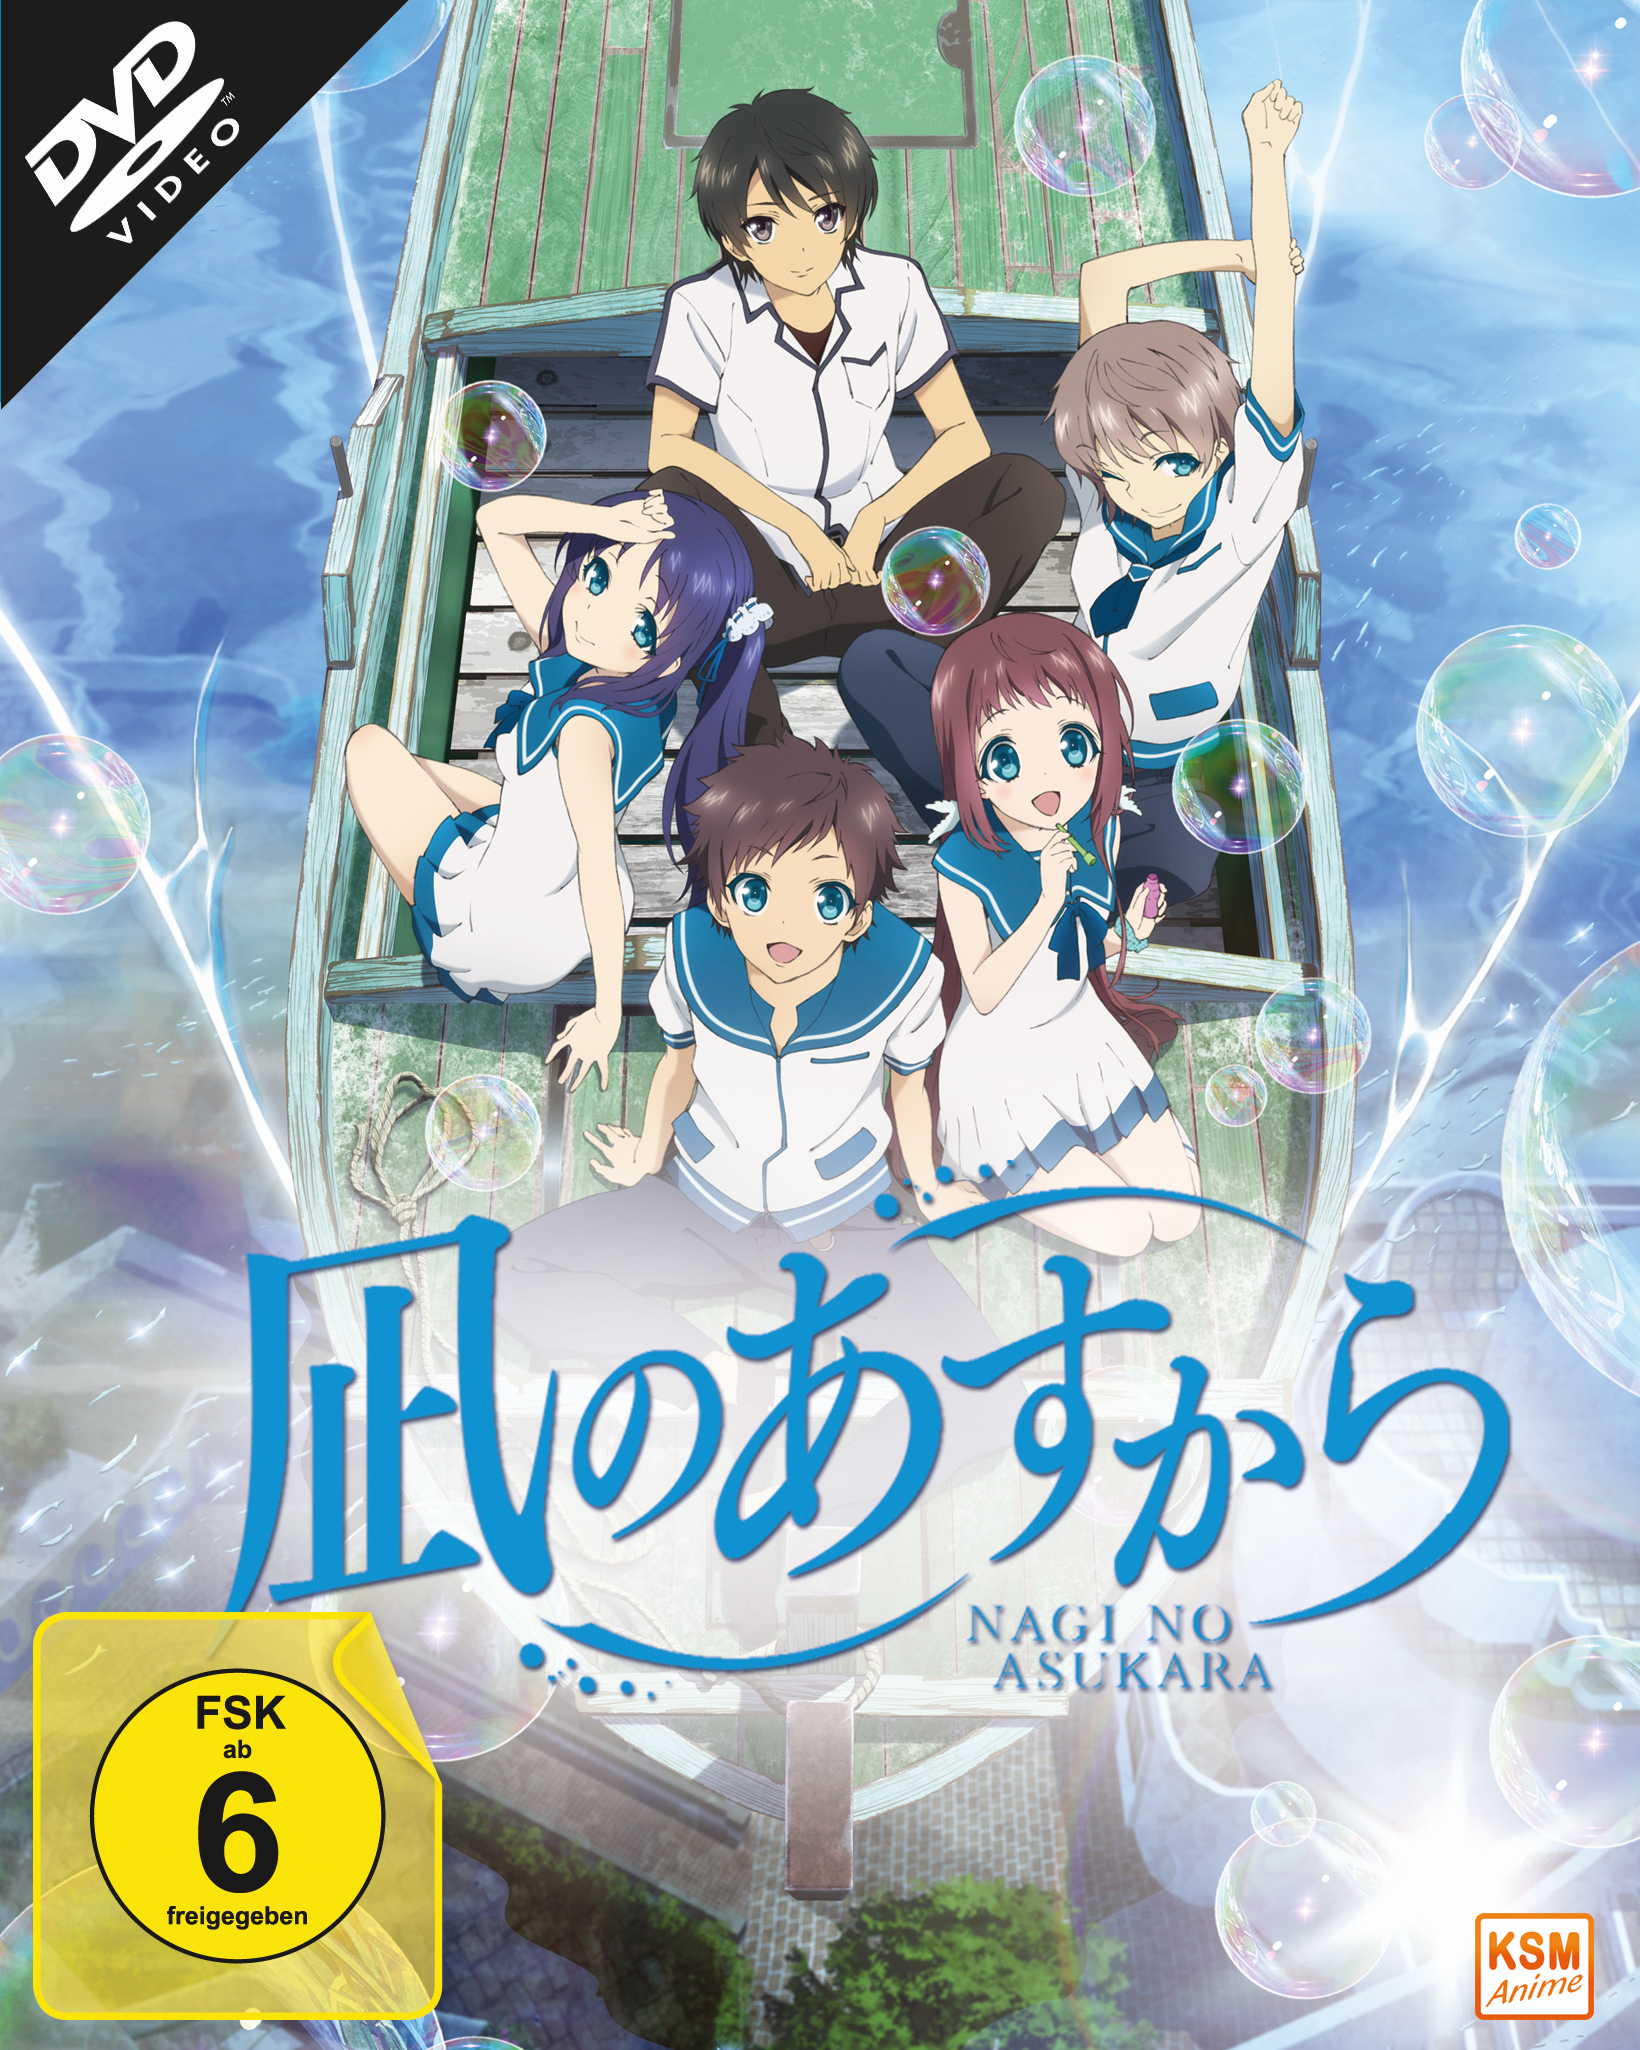 Nagi no Asukara - Volume 1: Episode 01-06 im Sammelschuber [DVD] Thumbnail 1